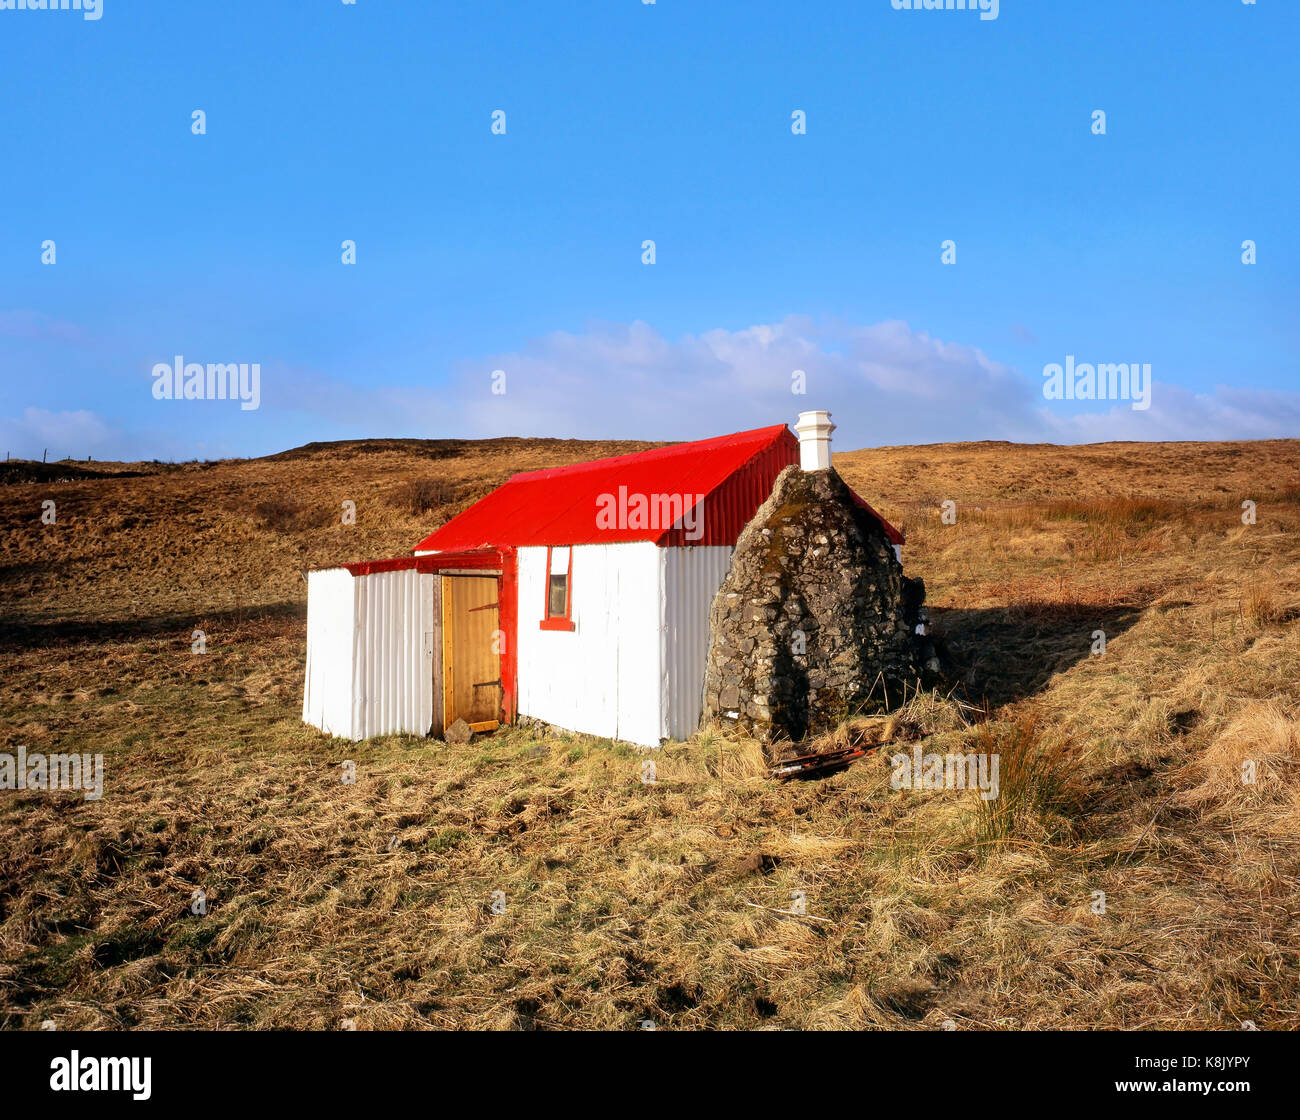 Un cottage peint de couleurs vives, crofters apporte une touche de couleur à la lande isolée sur l'île de Skye dans les highlands écossais Banque D'Images